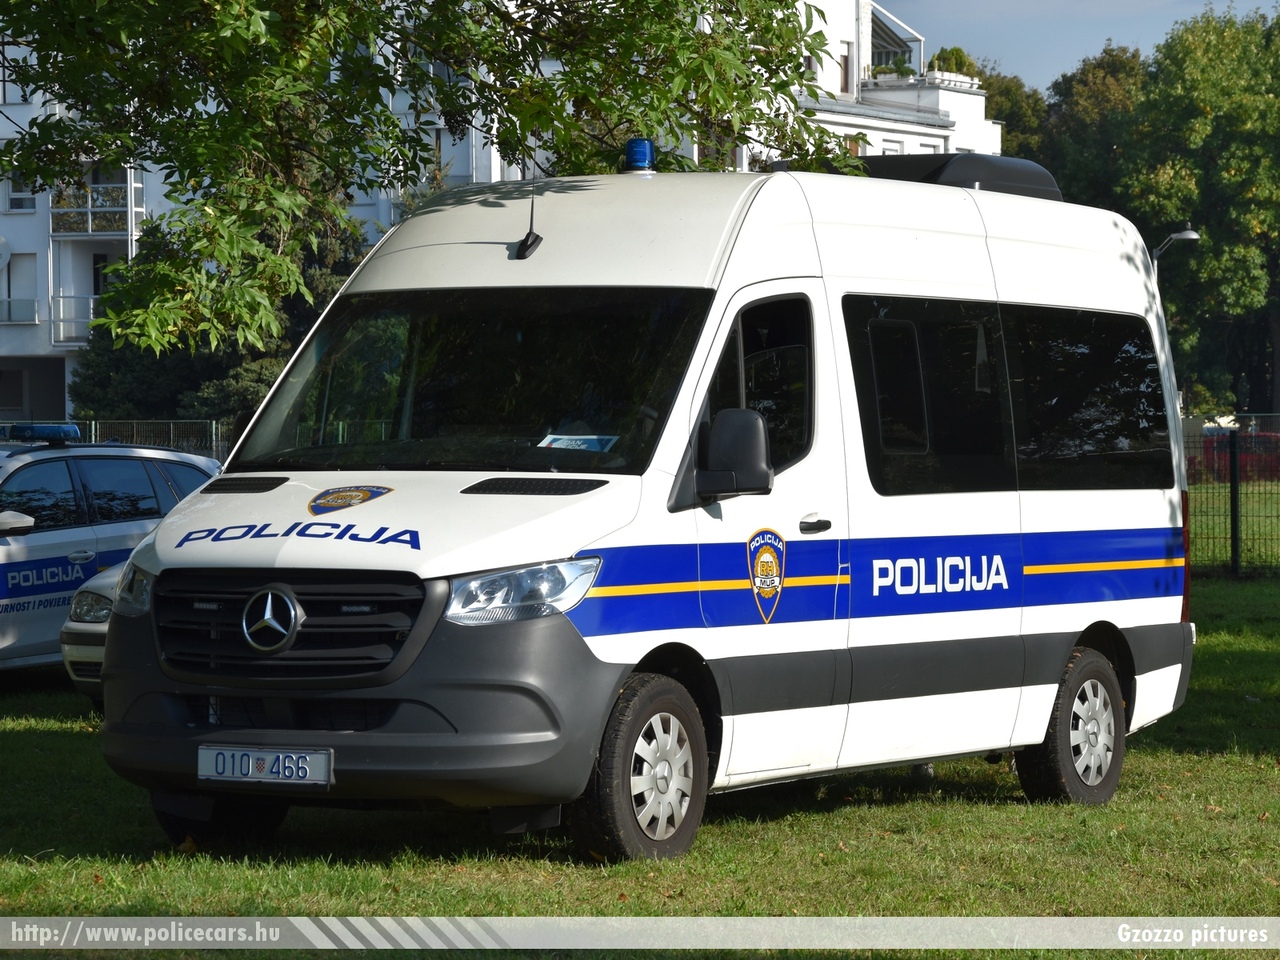 Mercedes Sprinter III, Hrvatska policija, fotó: Gzozzo pictures
Keywords: croatian rendőr rendőrautó rendőrség horvát Horvátország policecar police Croatia